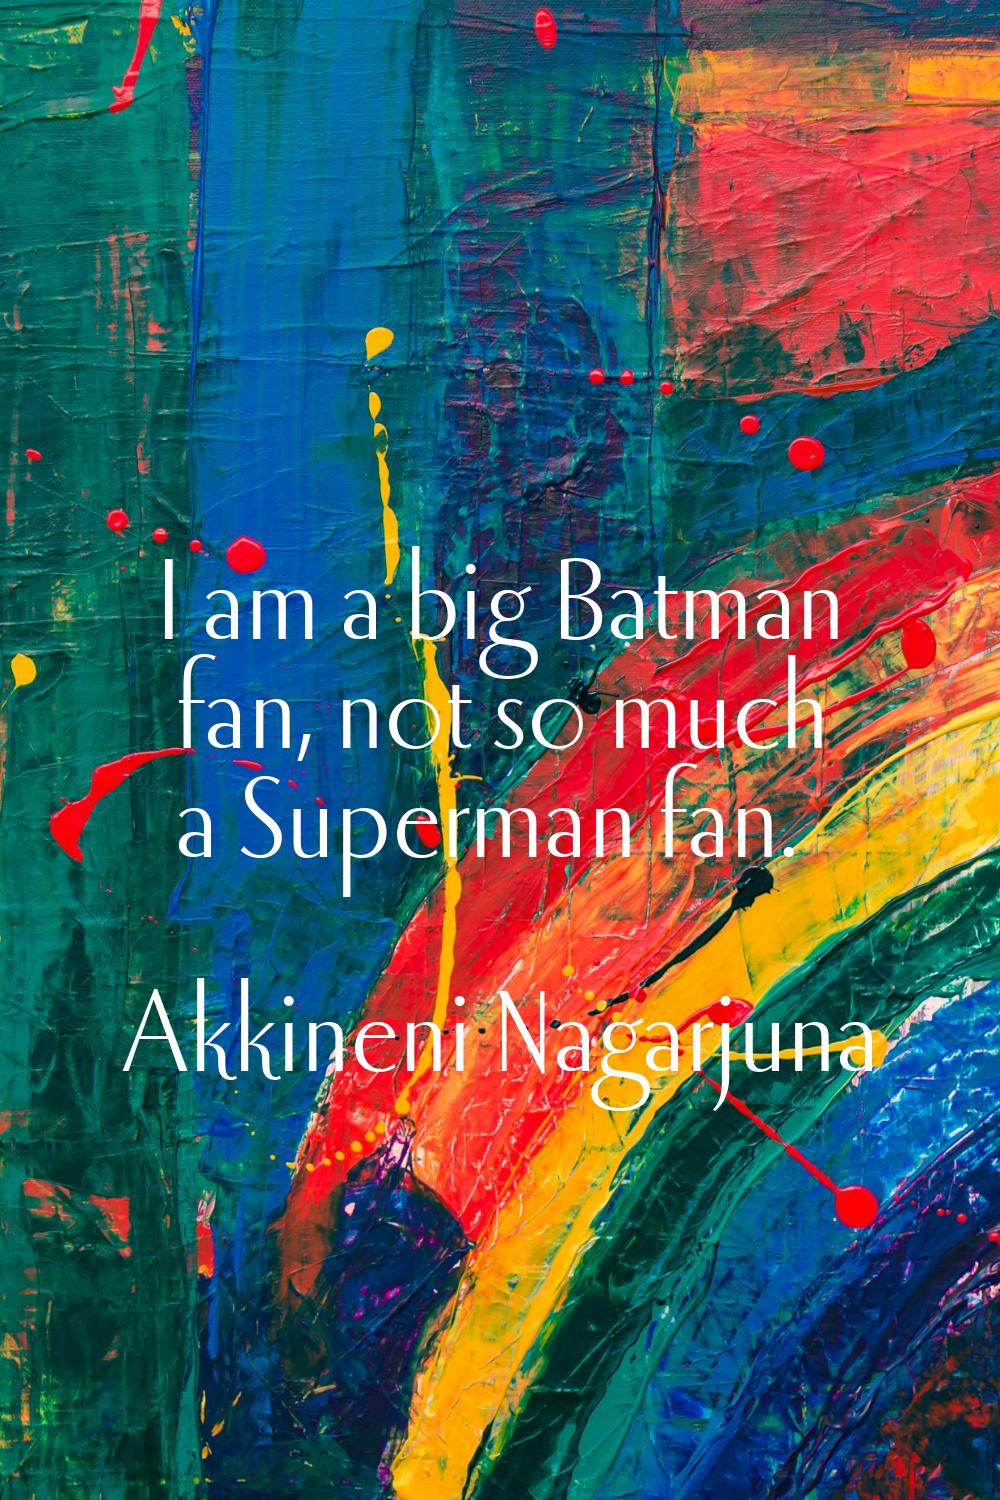 I am a big Batman fan, not so much a Superman fan.